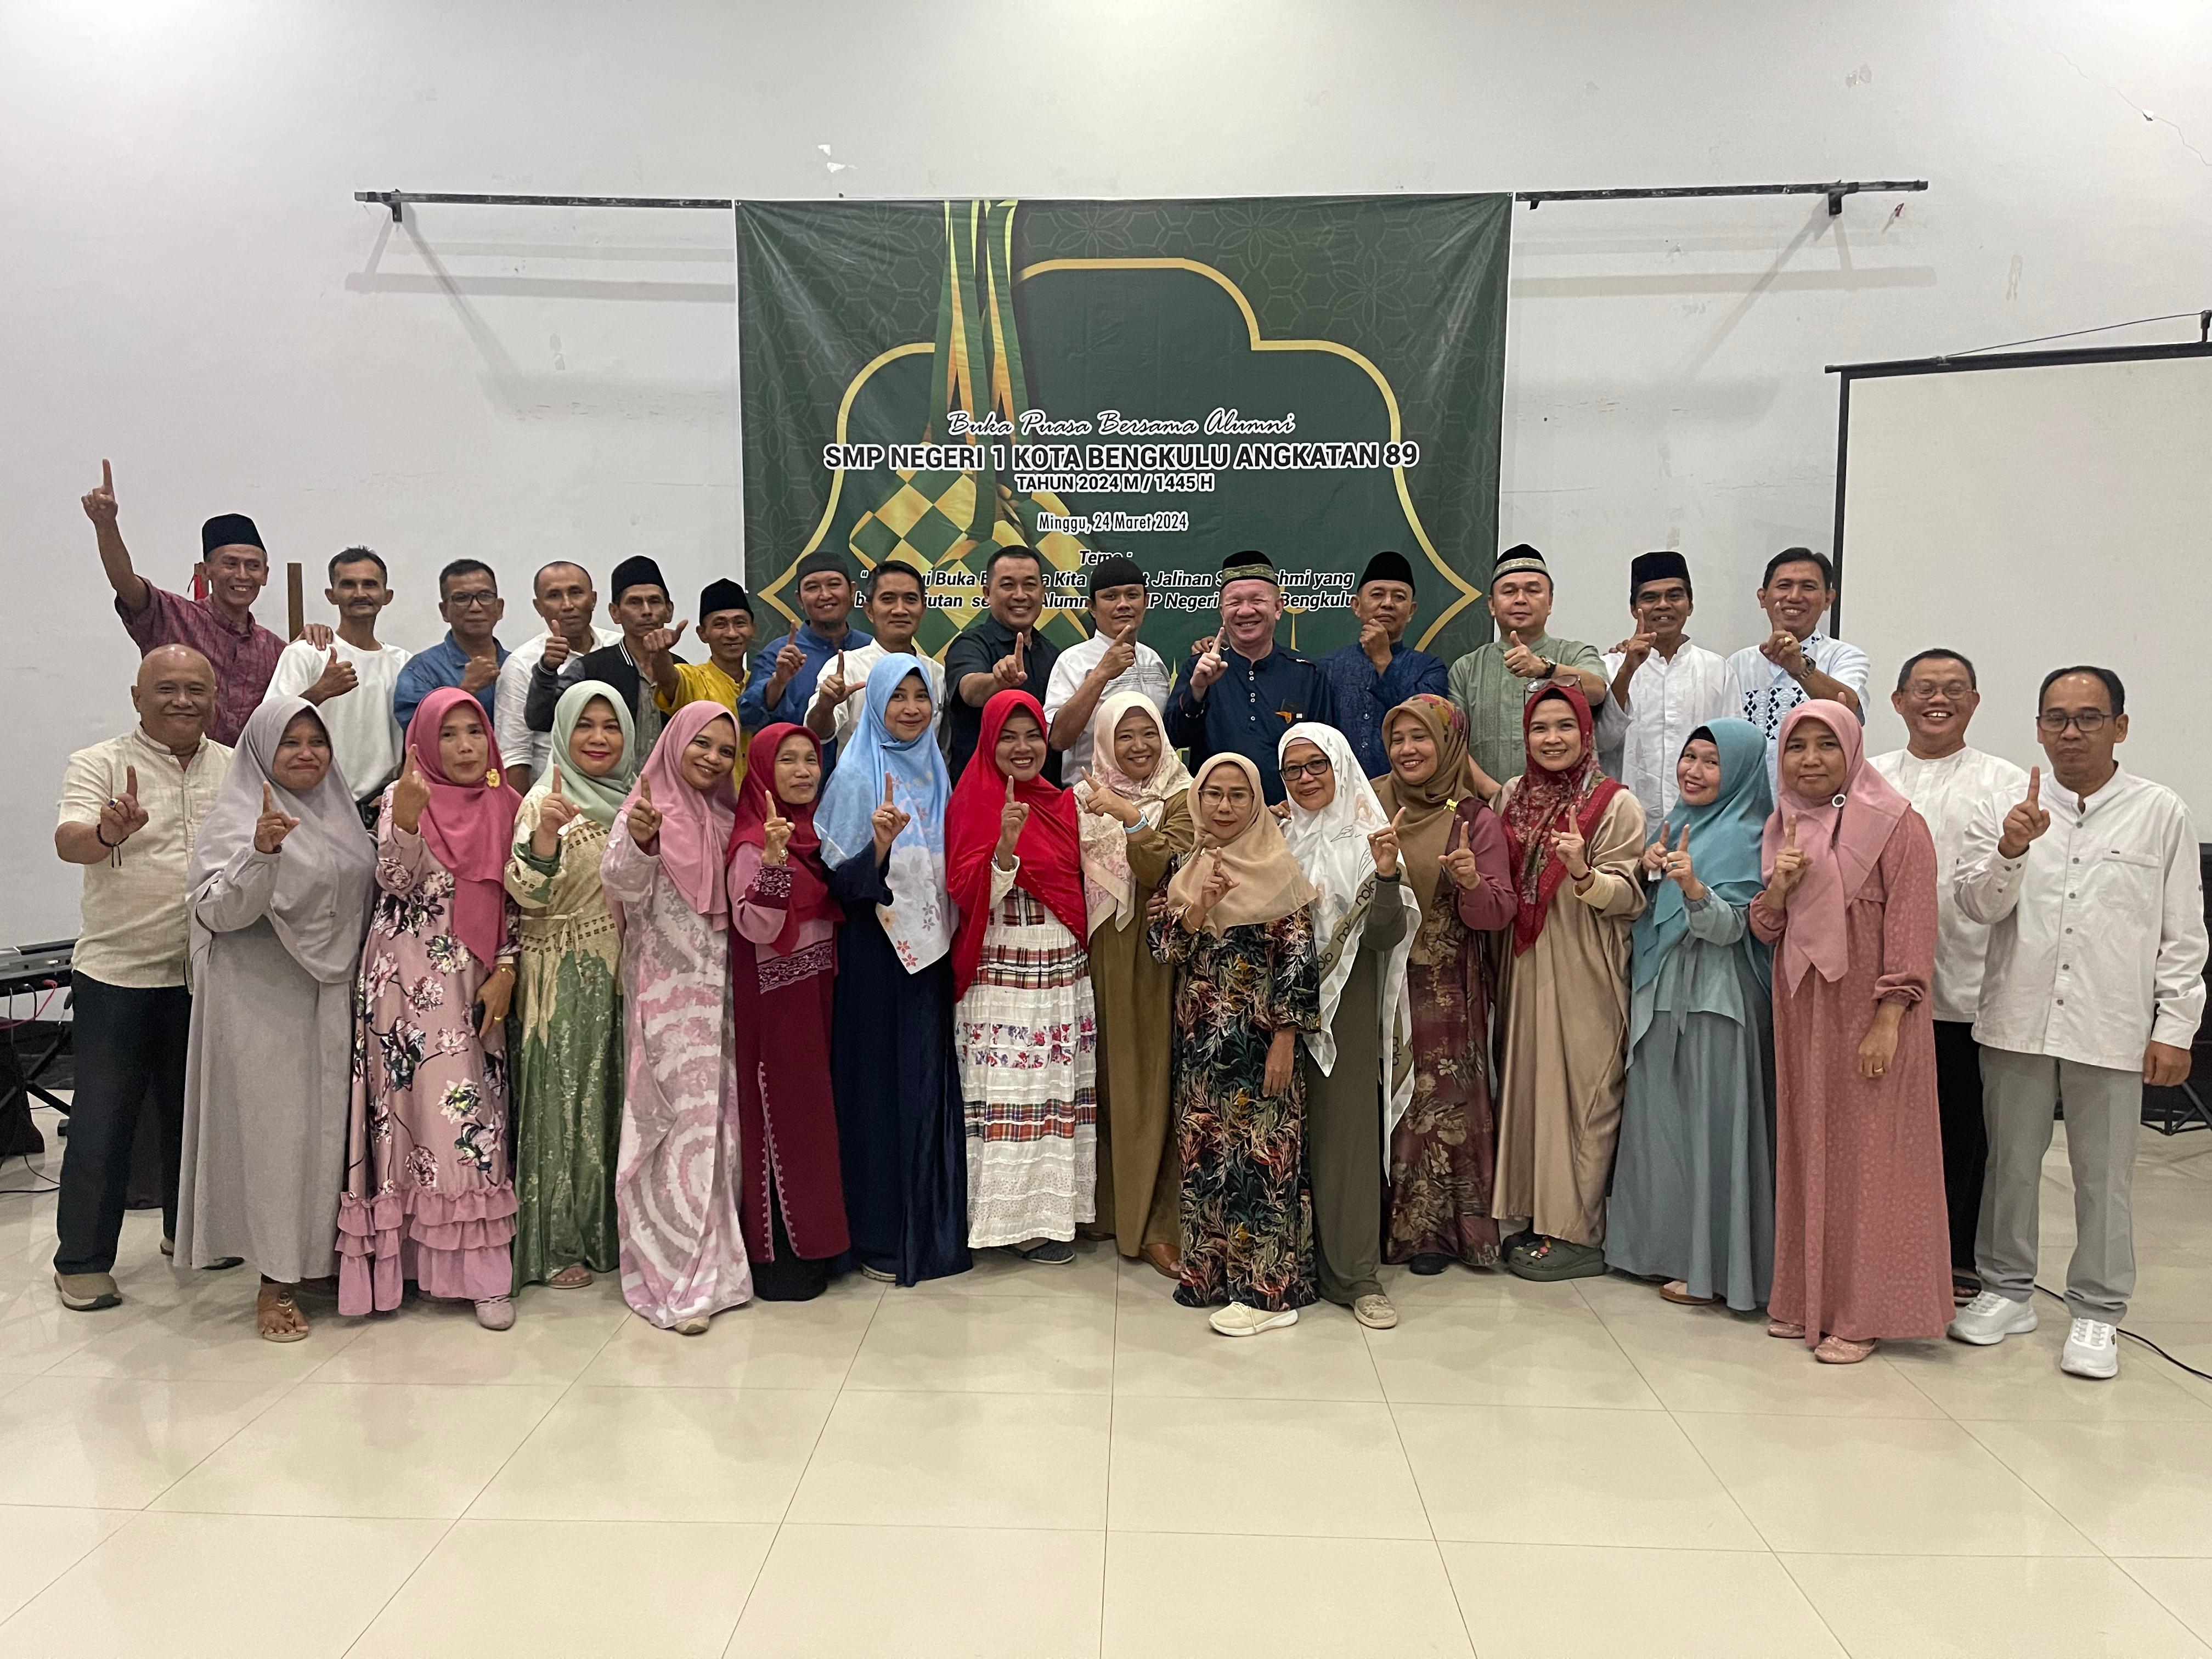 Intip Bukber ala Alumni SMPN 1 Kota Bengkulu Bertema 'Sahabat Selamanya'